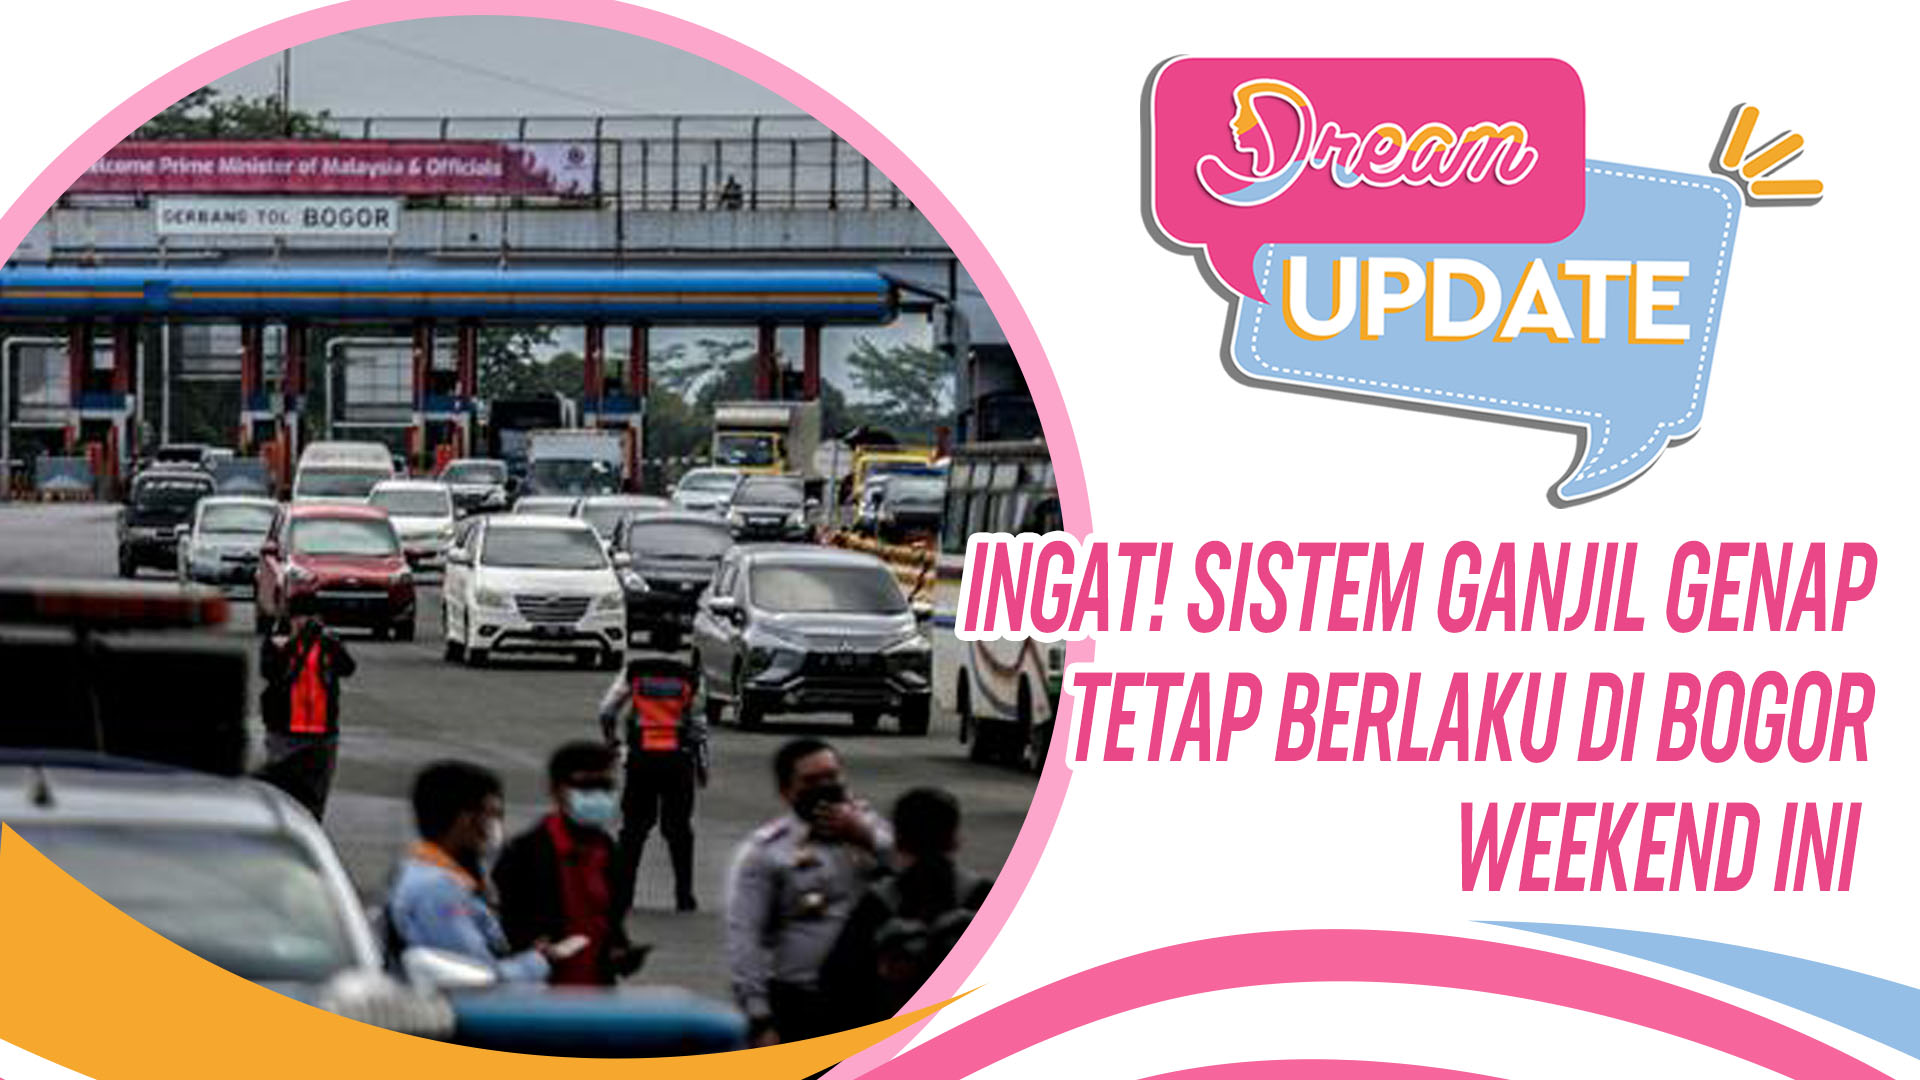 INGAT! Sistem Ganjil Genap Tetap Berlaku di Bogor Weekend Ini